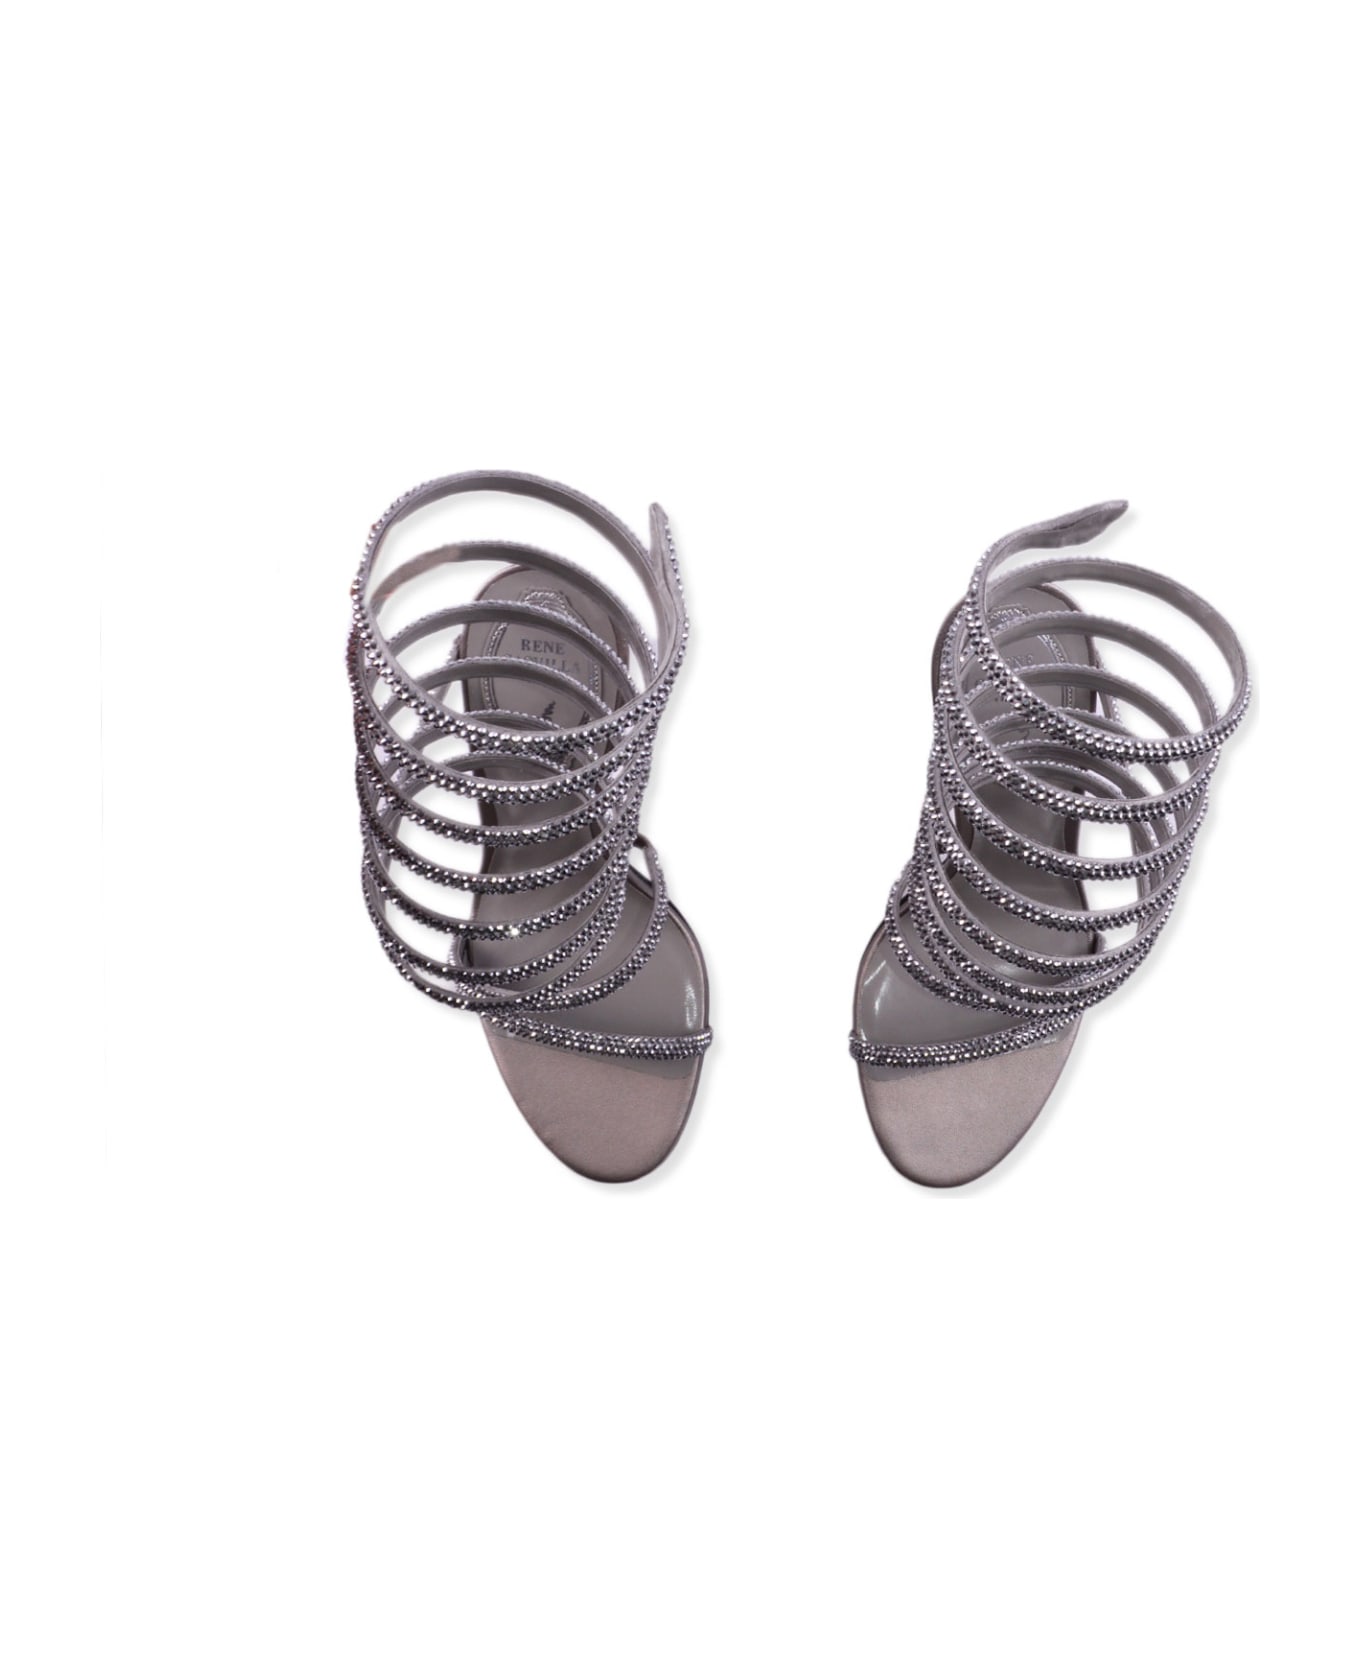 René Caovilla Heel Sandals - Silver